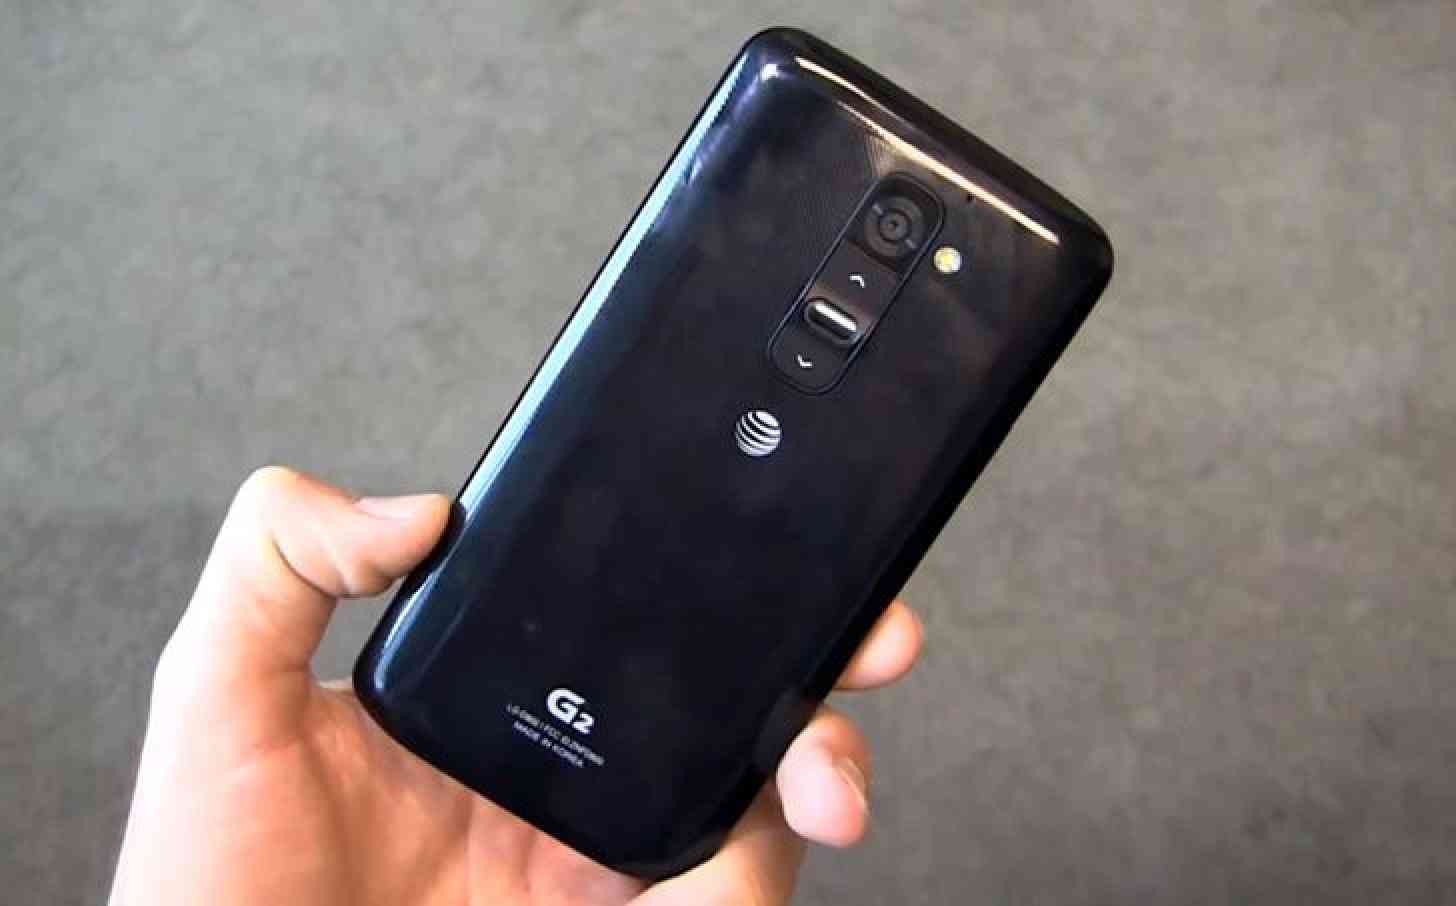 LG G2 AT&T rear